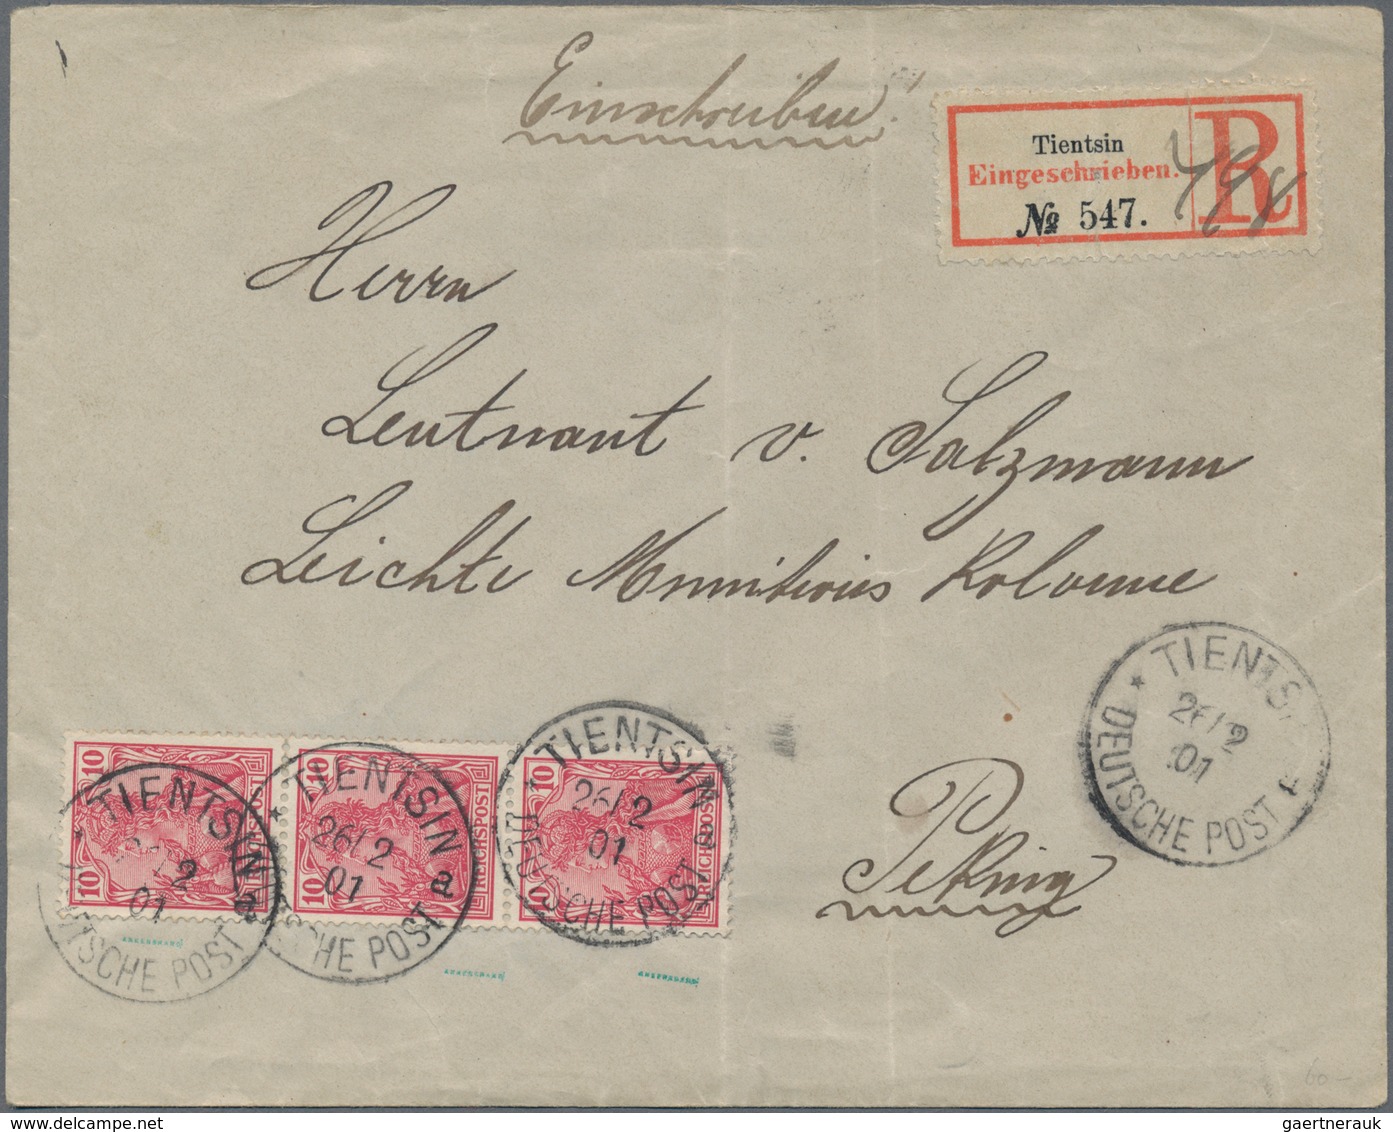 Deutsche Post In China: 1898 - 1910, Posten Von Mehr Als 40, Teils Hochwertigen Belegen Mit Petschil - China (offices)